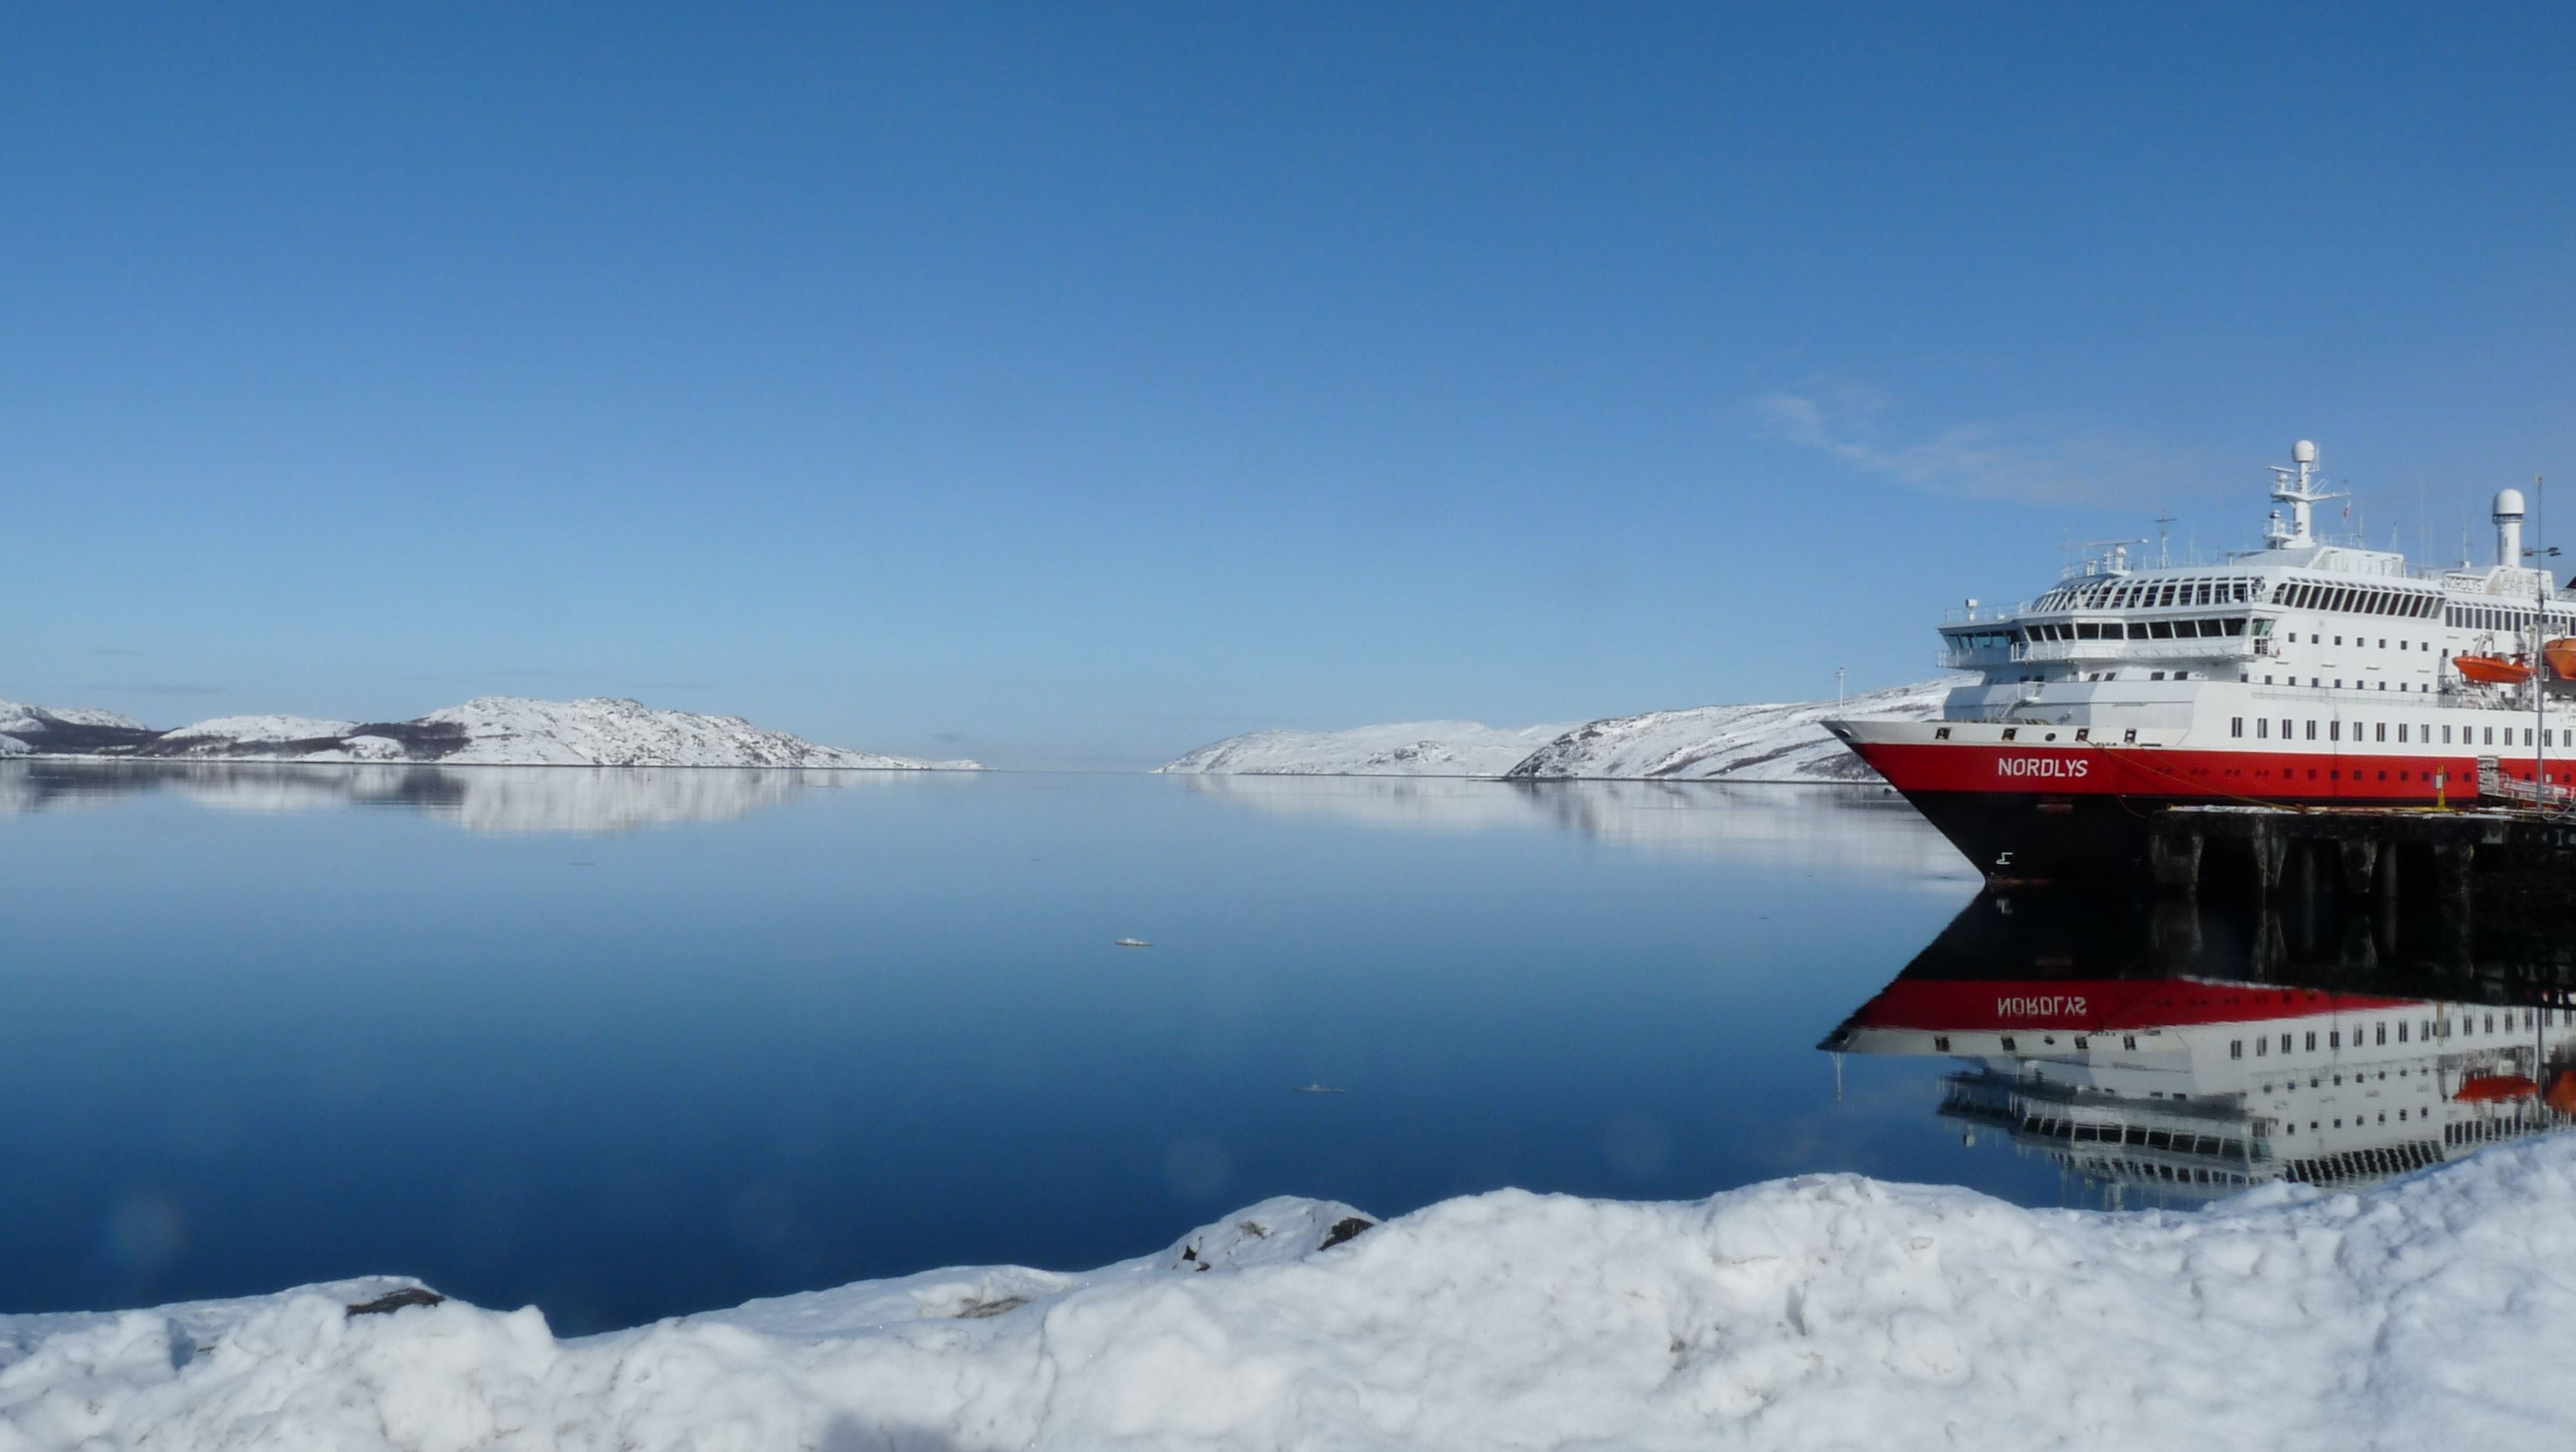 Partez à la découverte du monde avec Hurtigruten - offres croisières last minute 2018